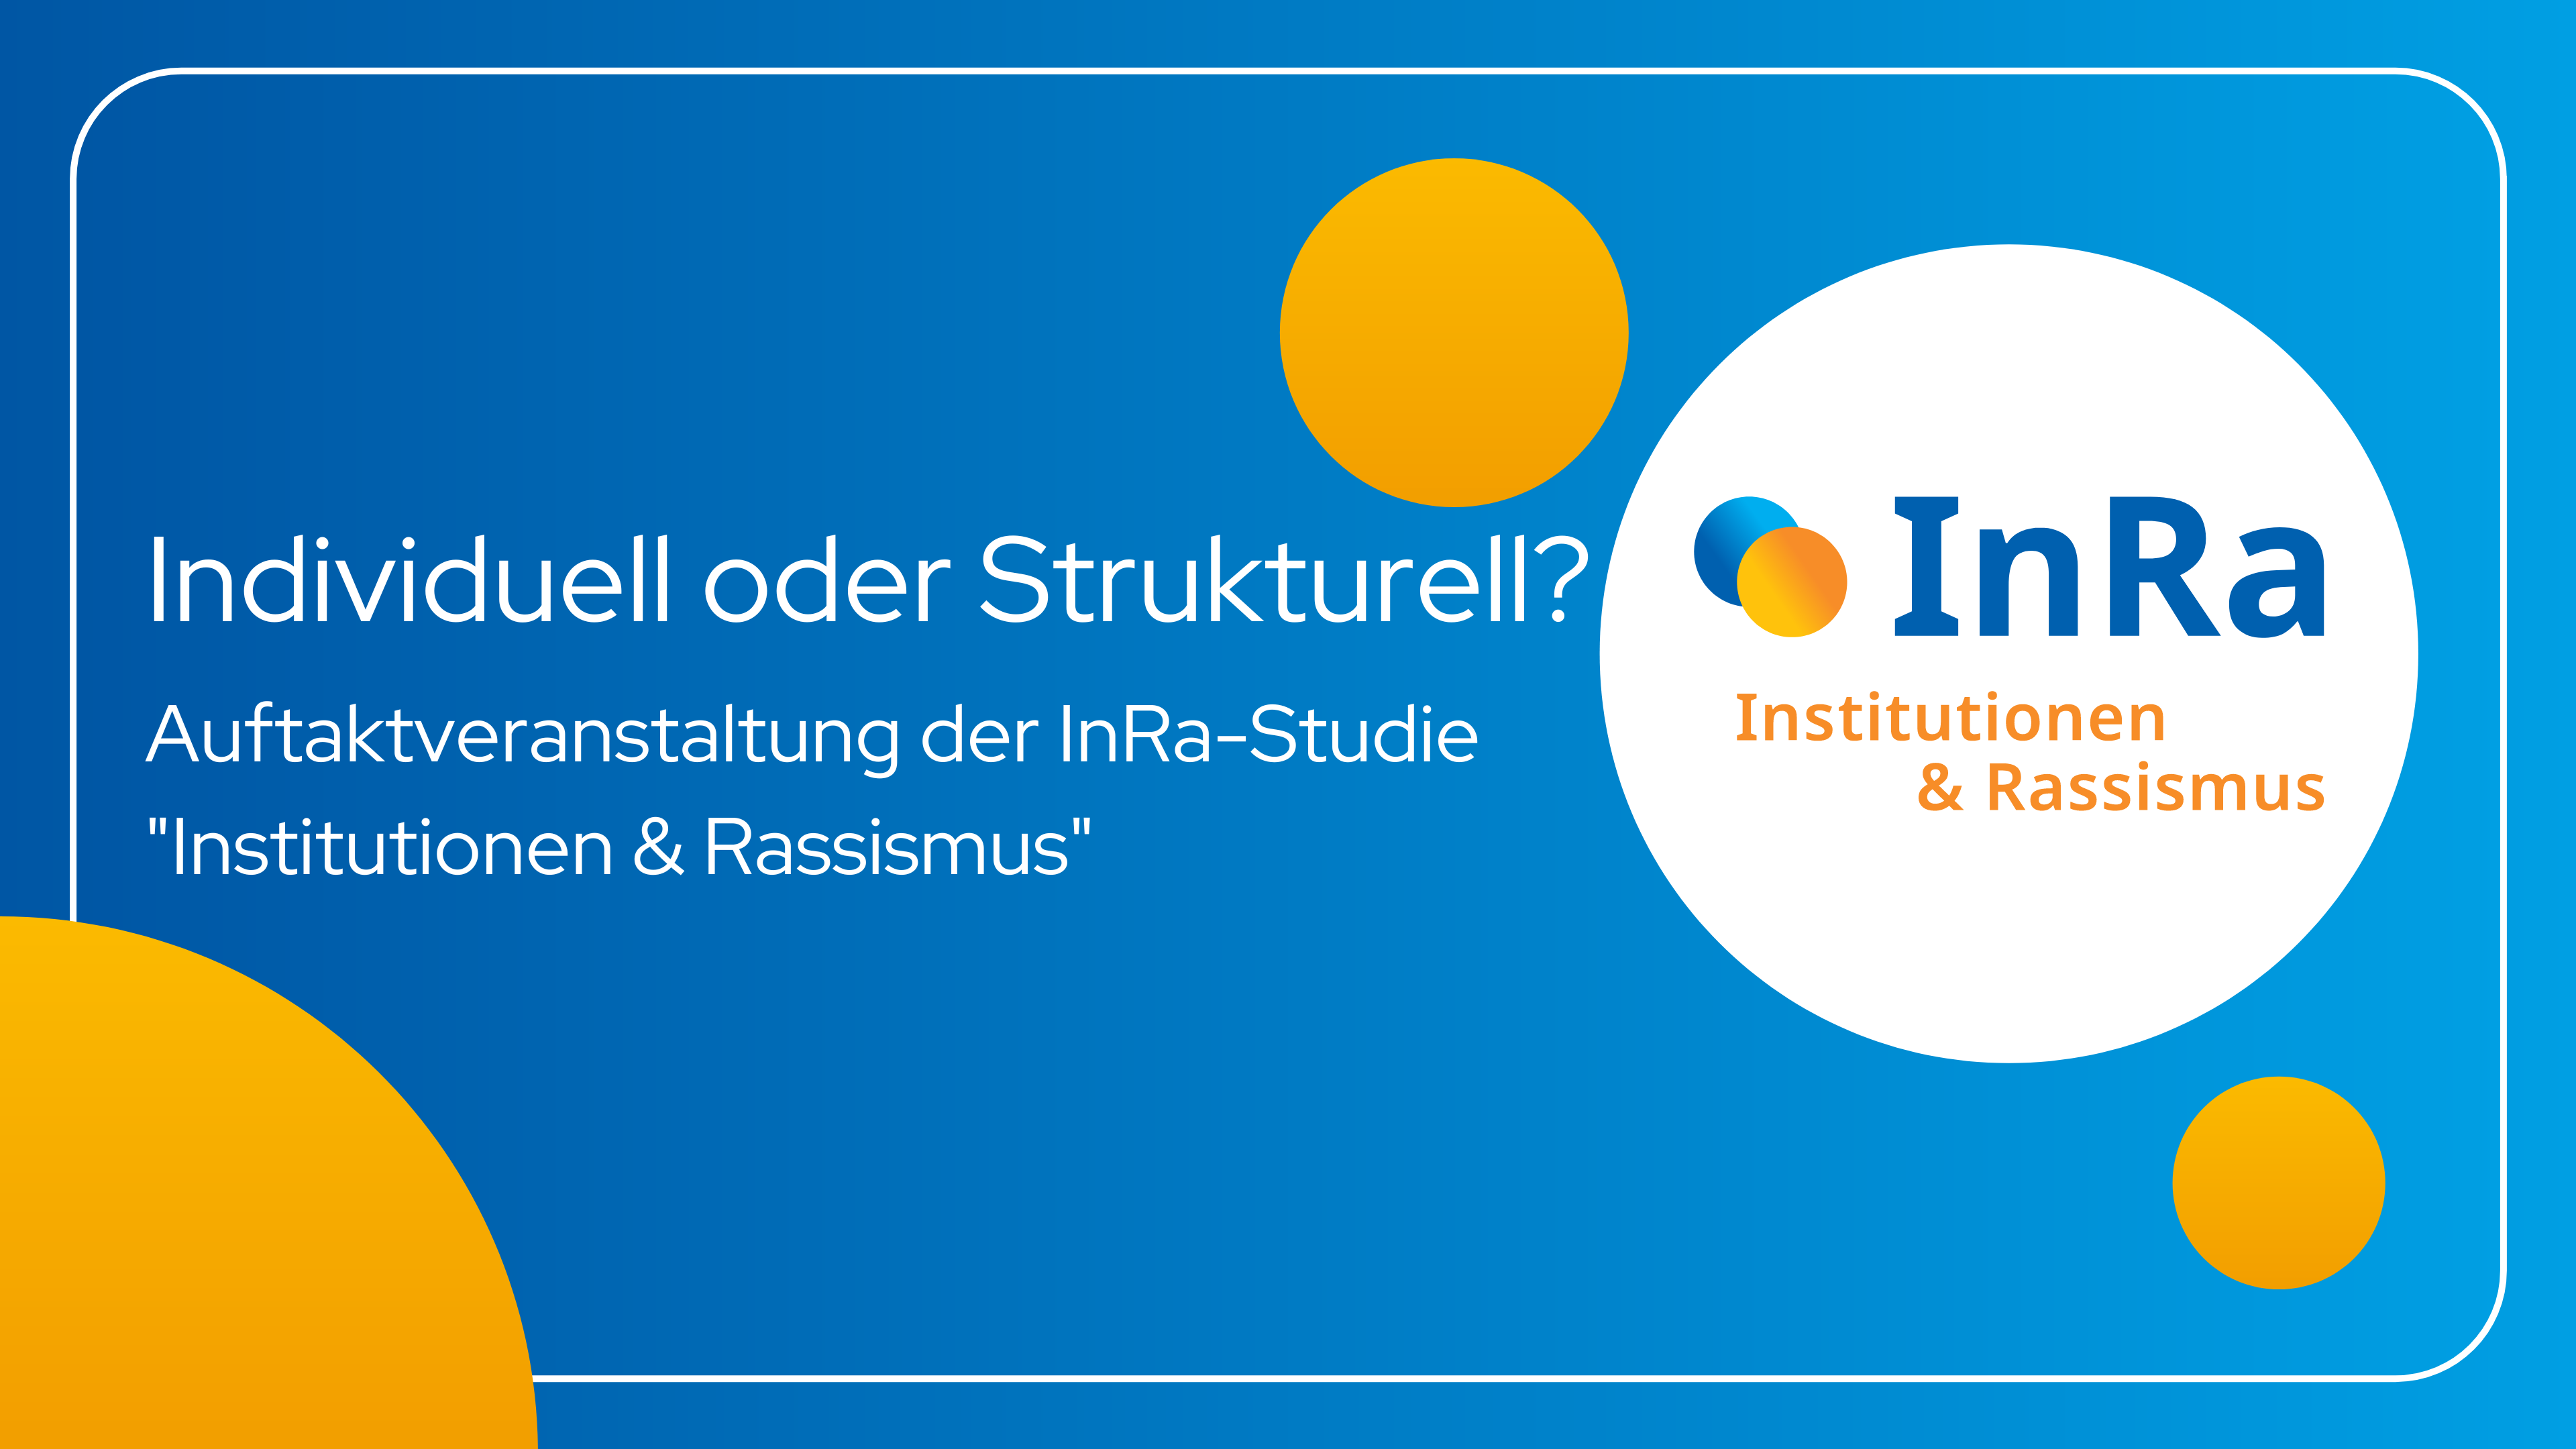 Auftaktveranstaltung der InRa-Studie: Individuell oder Strukturell? - Image